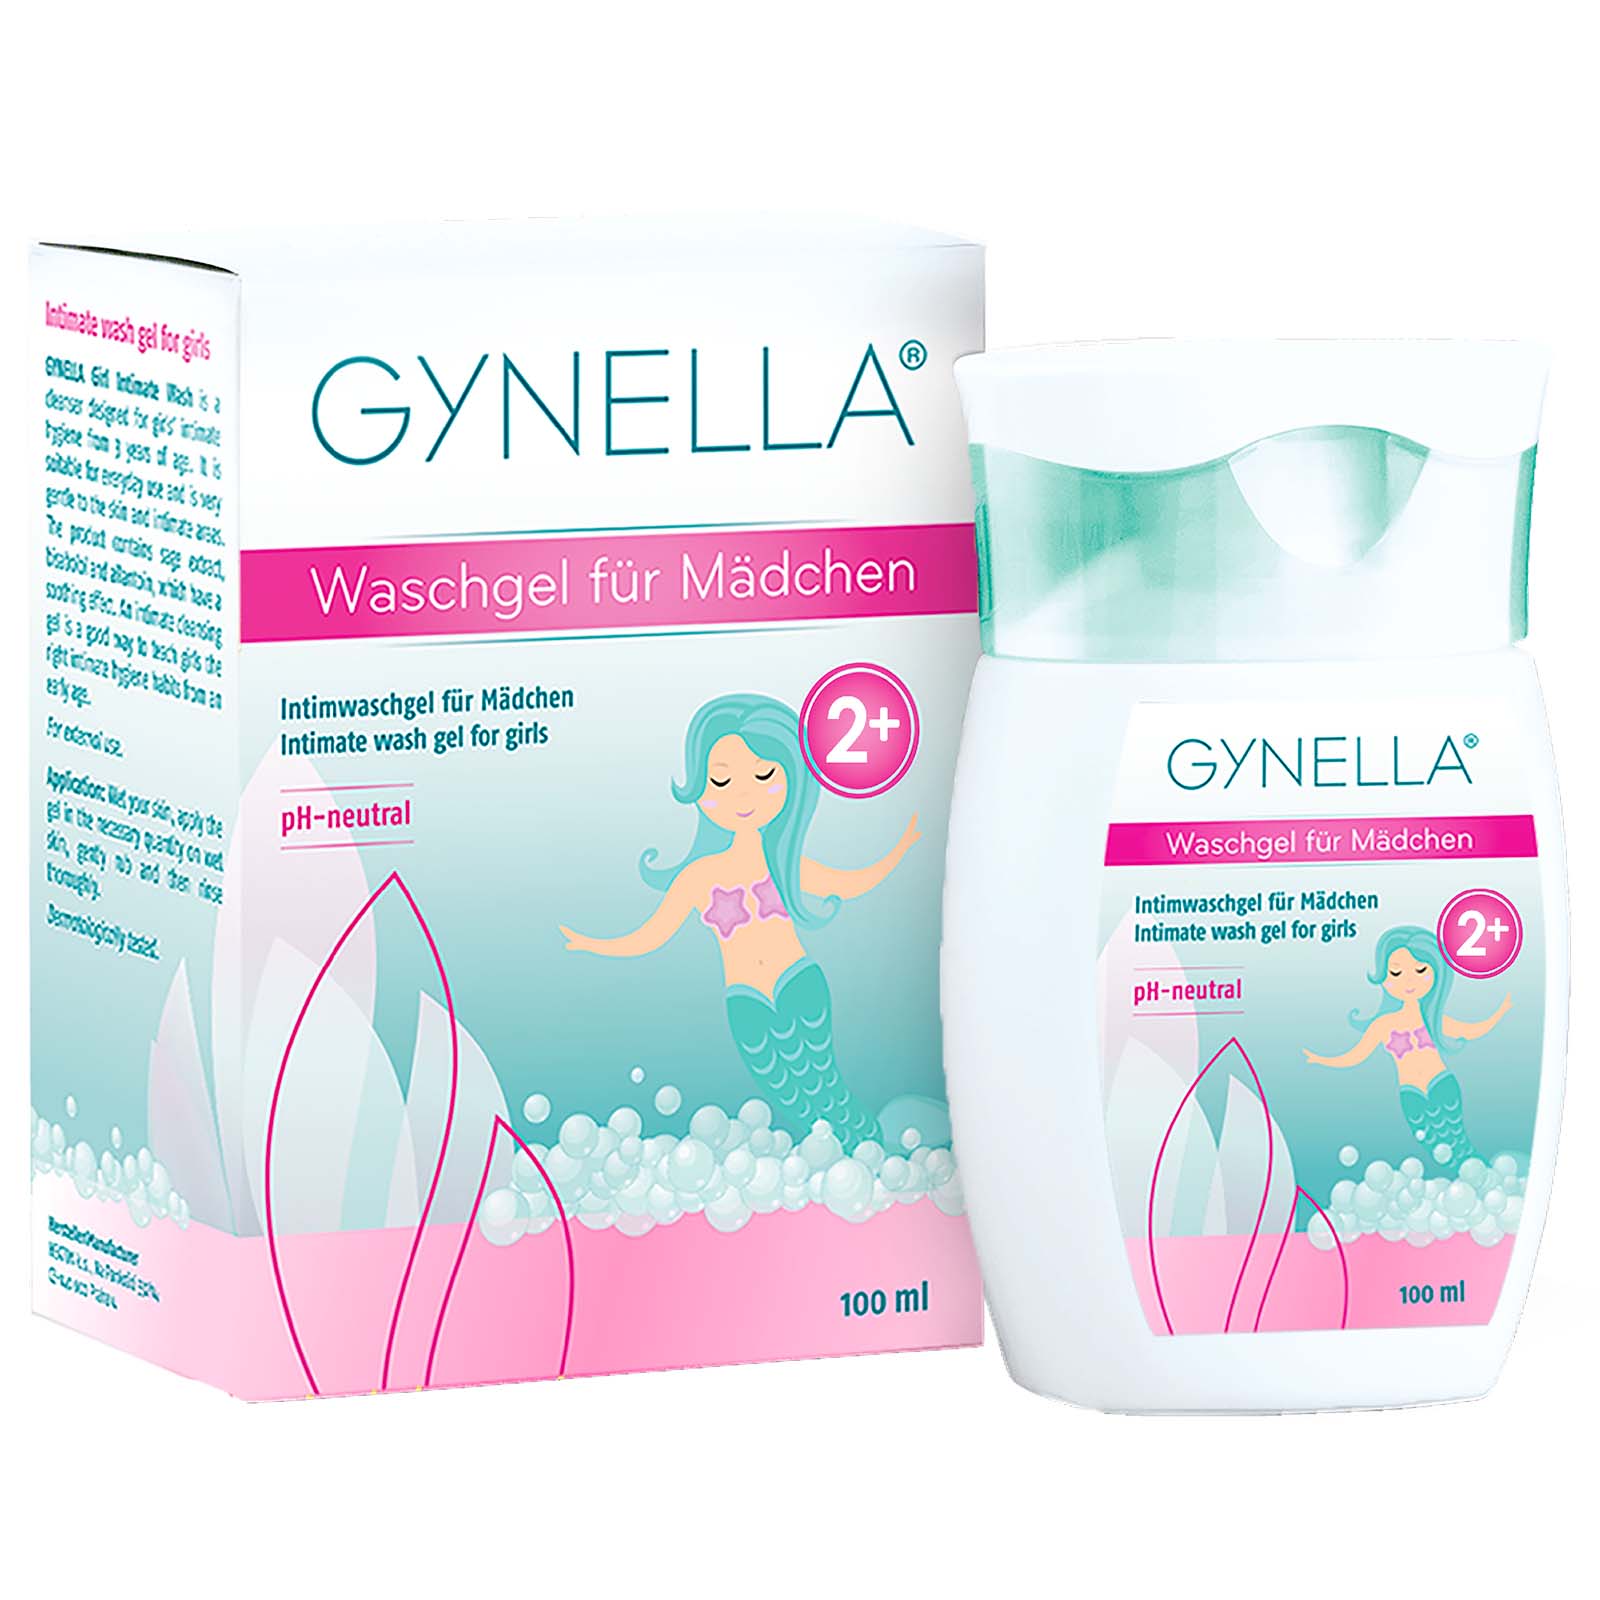 Gynella Waschgel für Mädchen